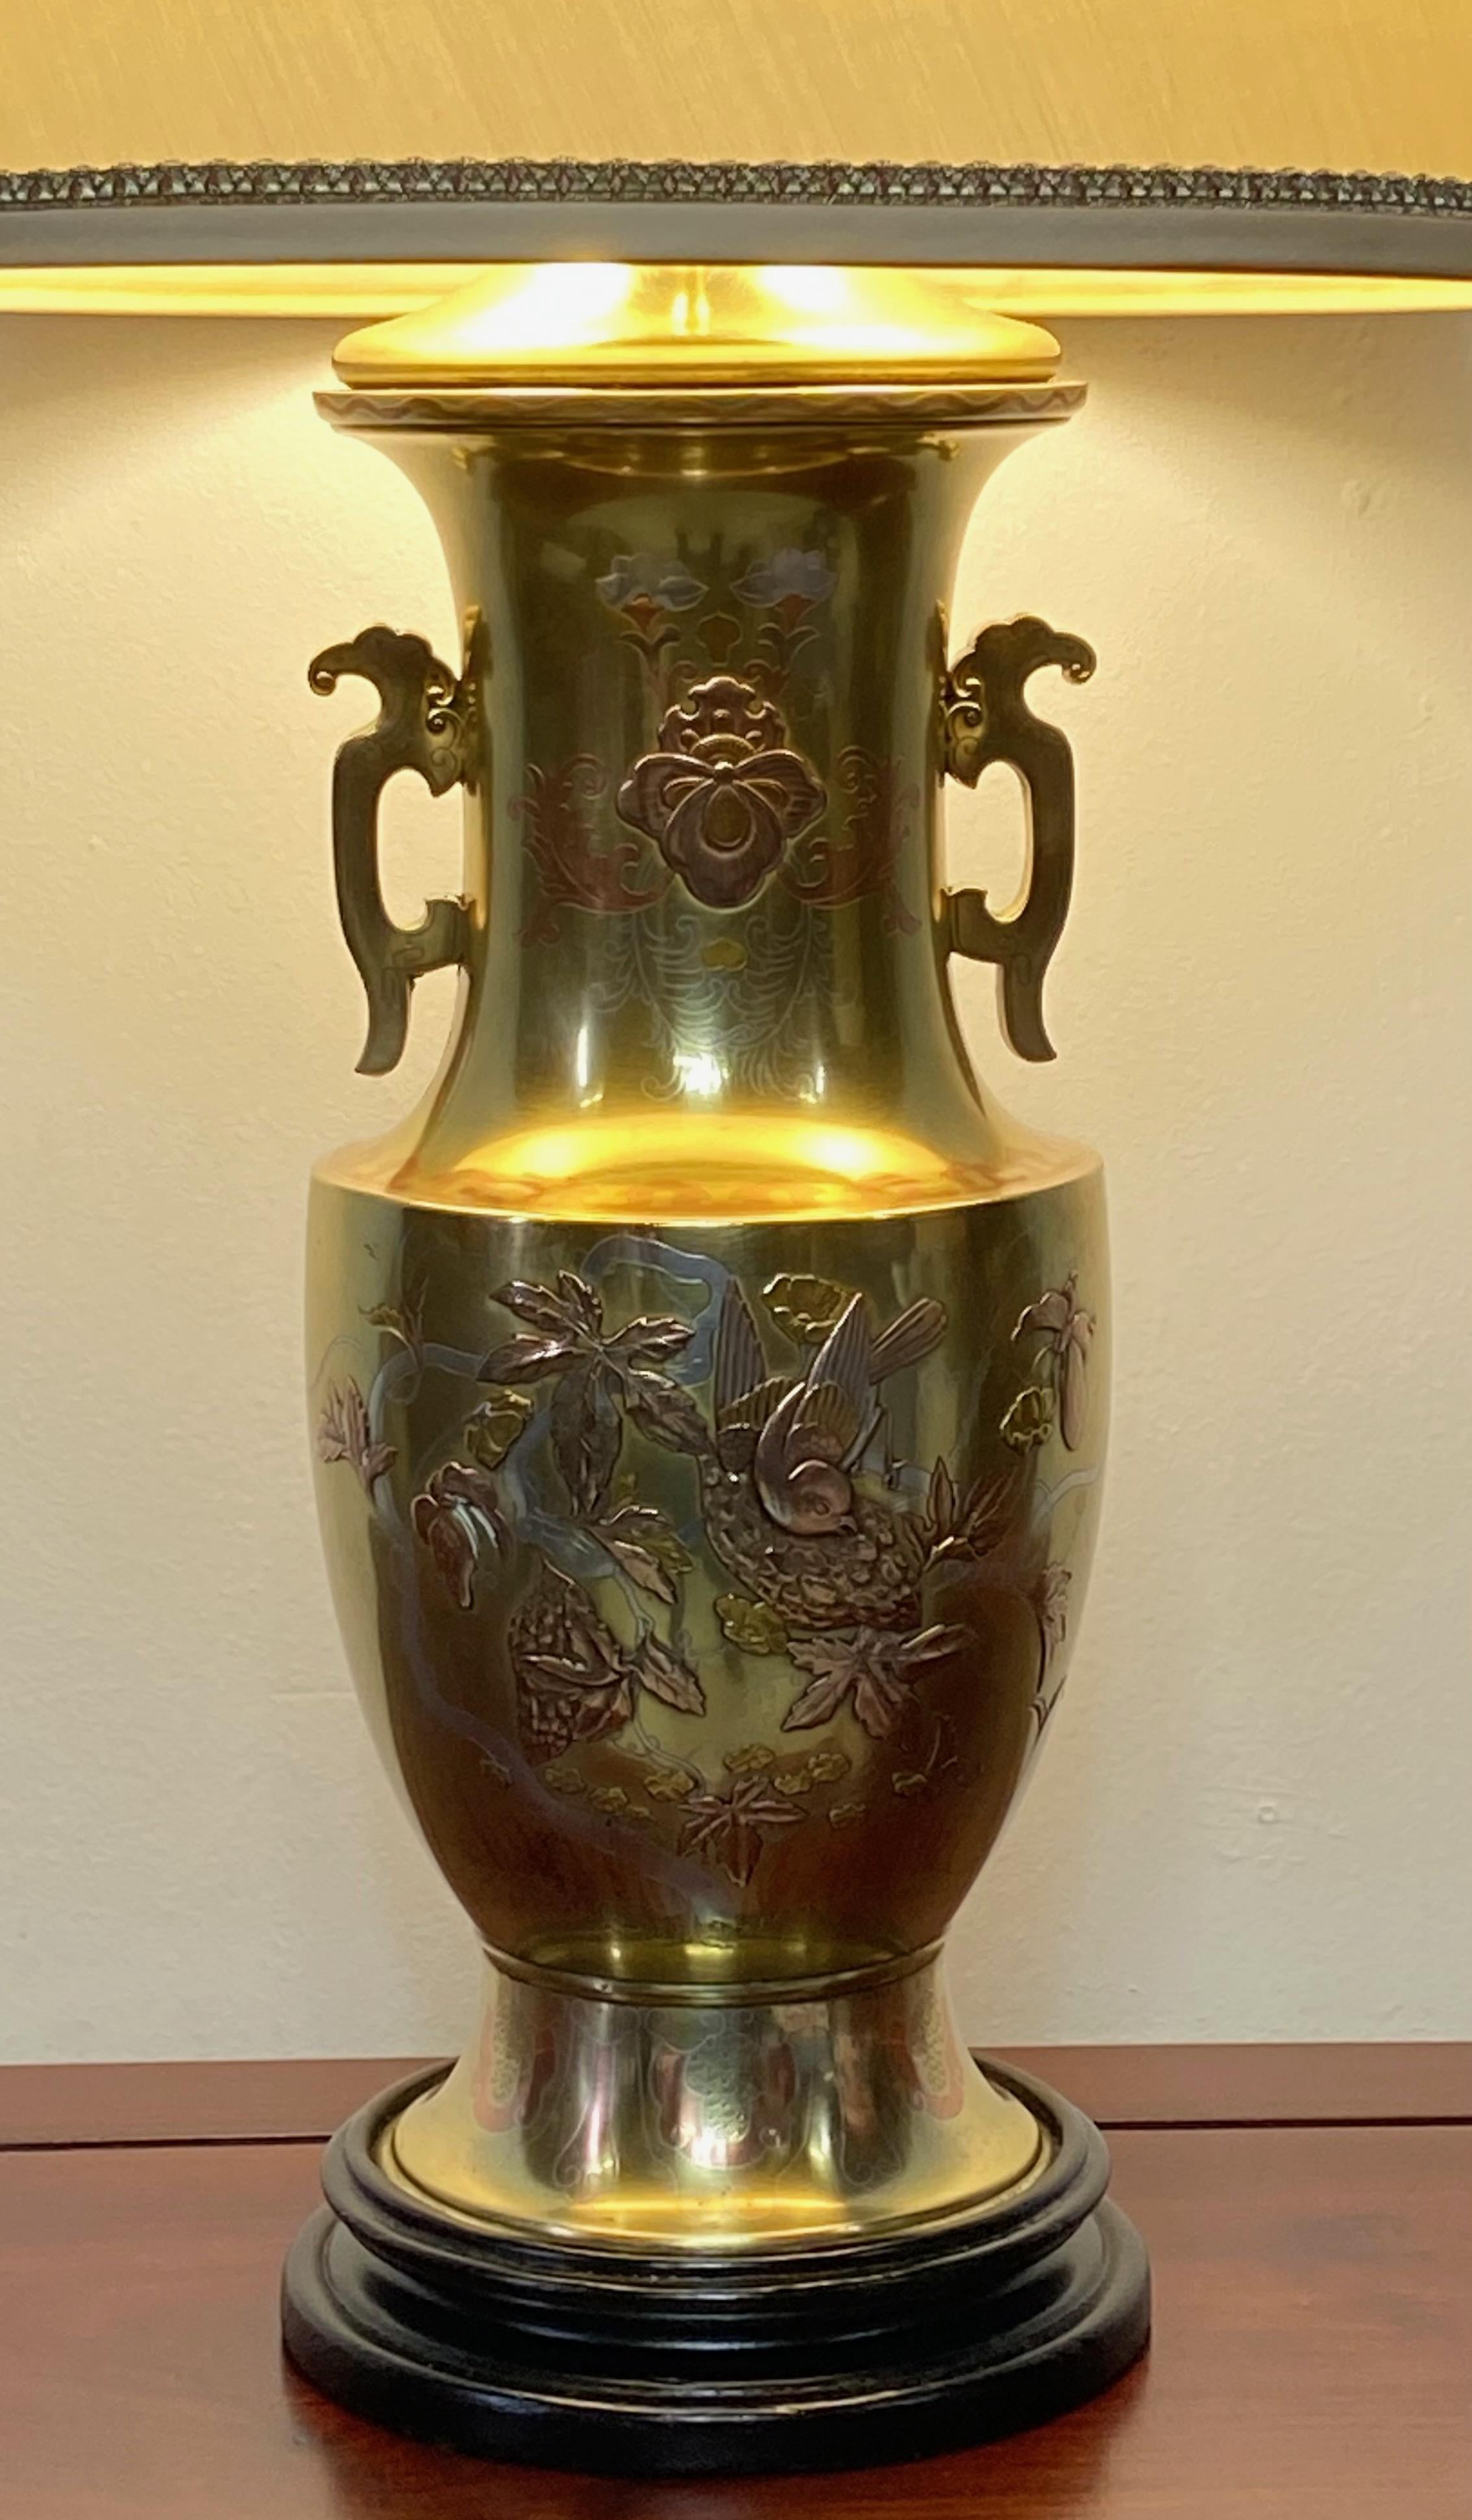 Un vase en bronze jaune massif avec incrustation de bronze rouge et d'argent converti en lampe. Le corps du vase avait à l'origine une patine vert foncé avec des reflets bronze rouge et argent. La patine a été enlevée et le vase a été poli et